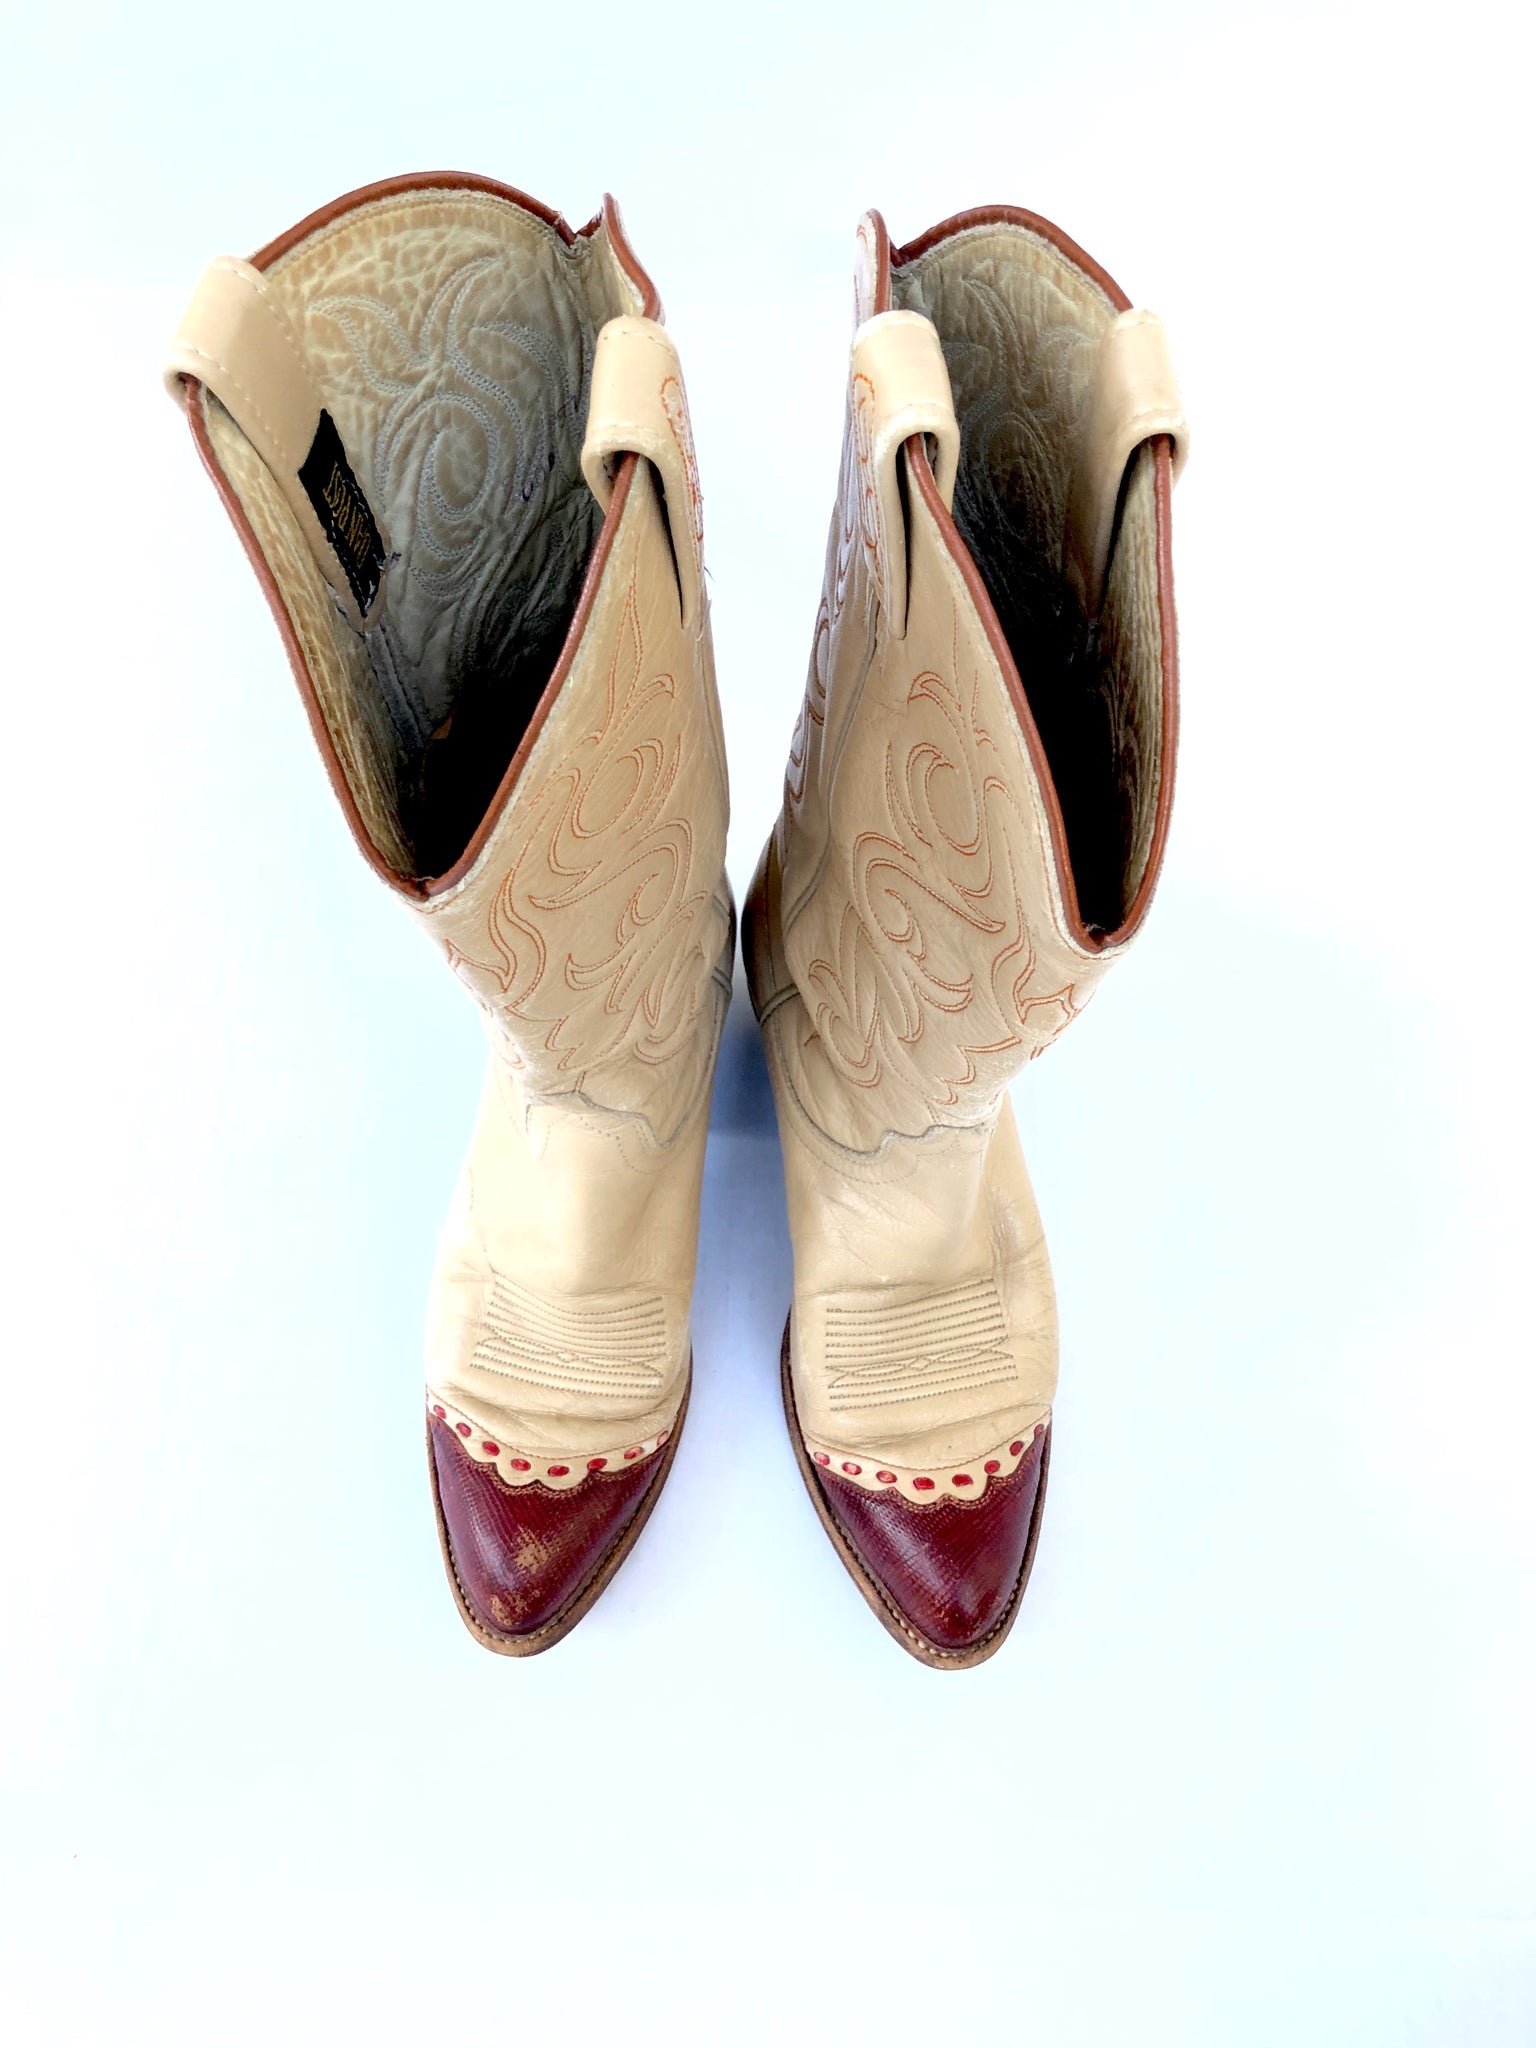 VINTAGE: Dan Post Leather Cowboy Boots